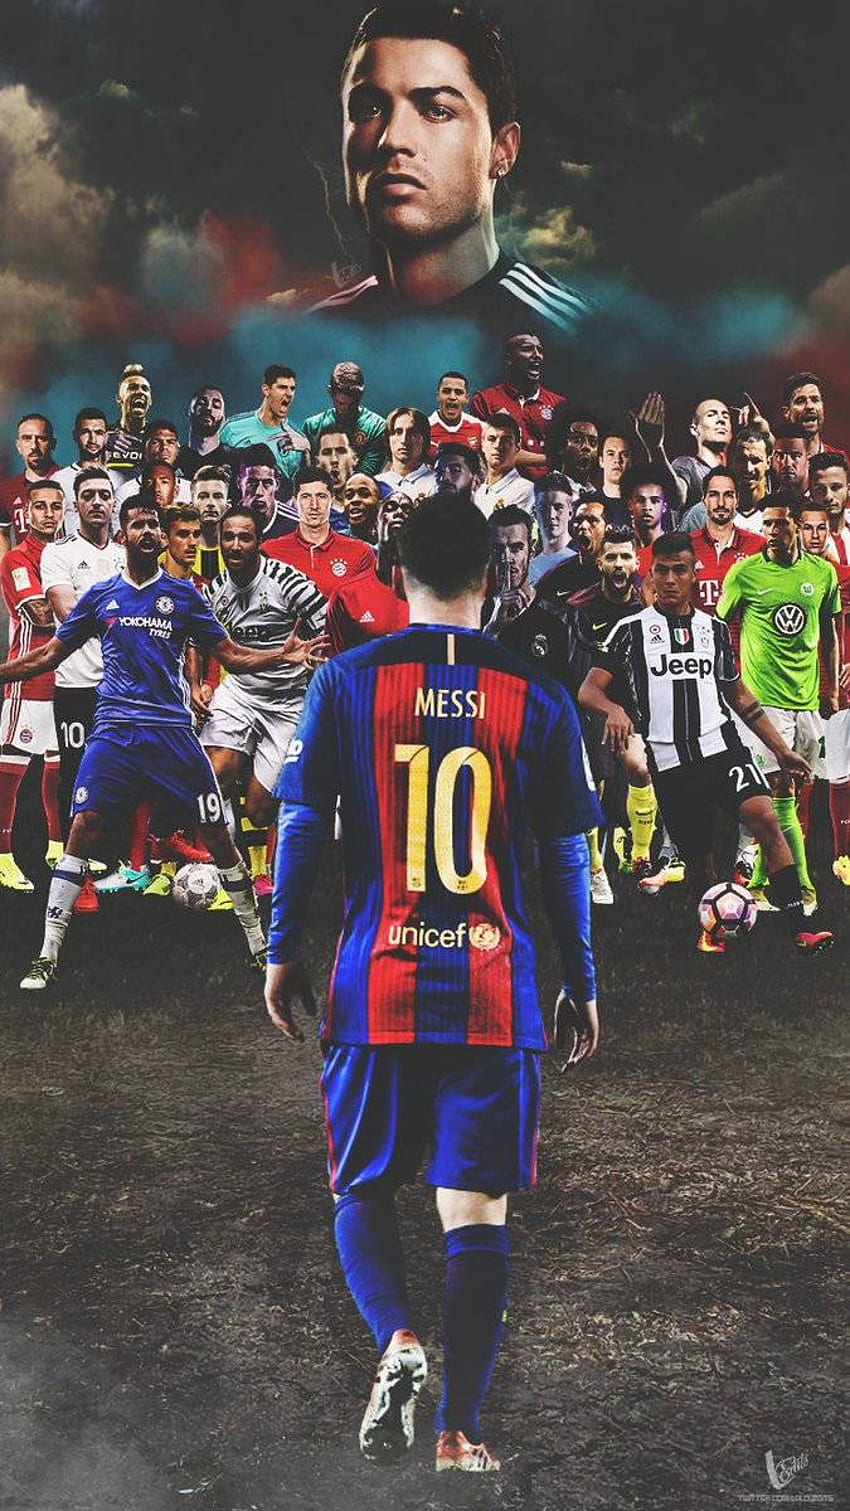 Lionel Messi: Cùng ngắm nhìn tài năng siêu đẳng của Lionel Messi, siêu sao bóng đá người Argentina khiến cho người xem không thể rời mắt khỏi những pha bóng đẹp mắt và được tưởng thưởng với các pha làm bàn điêu luyện.